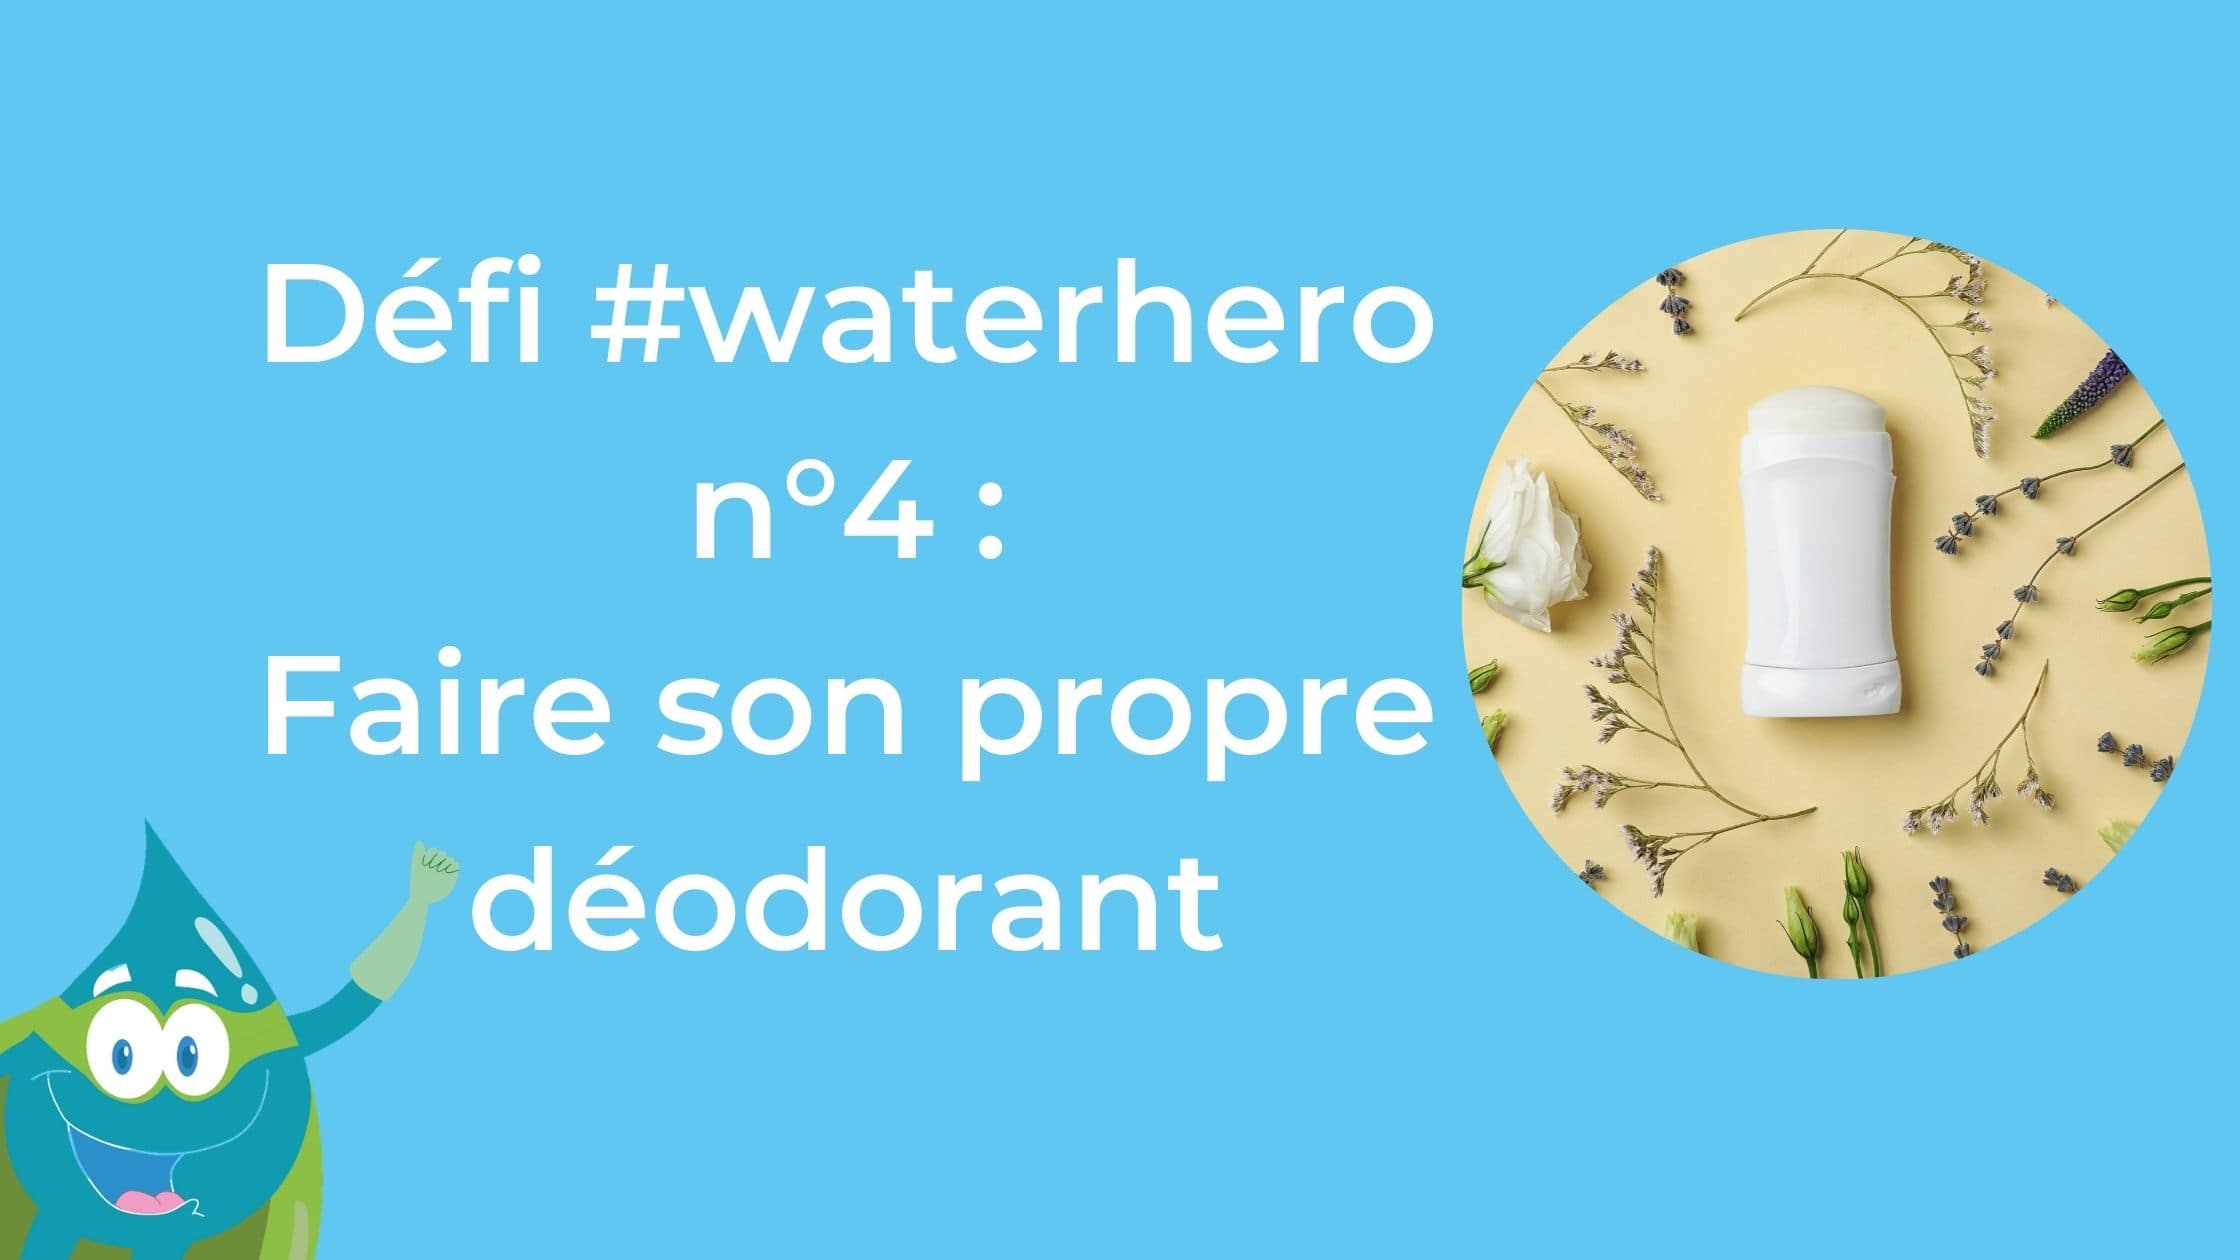 Défi #waterhero n°4 : faire son déodorant maison - Blog Hydrao